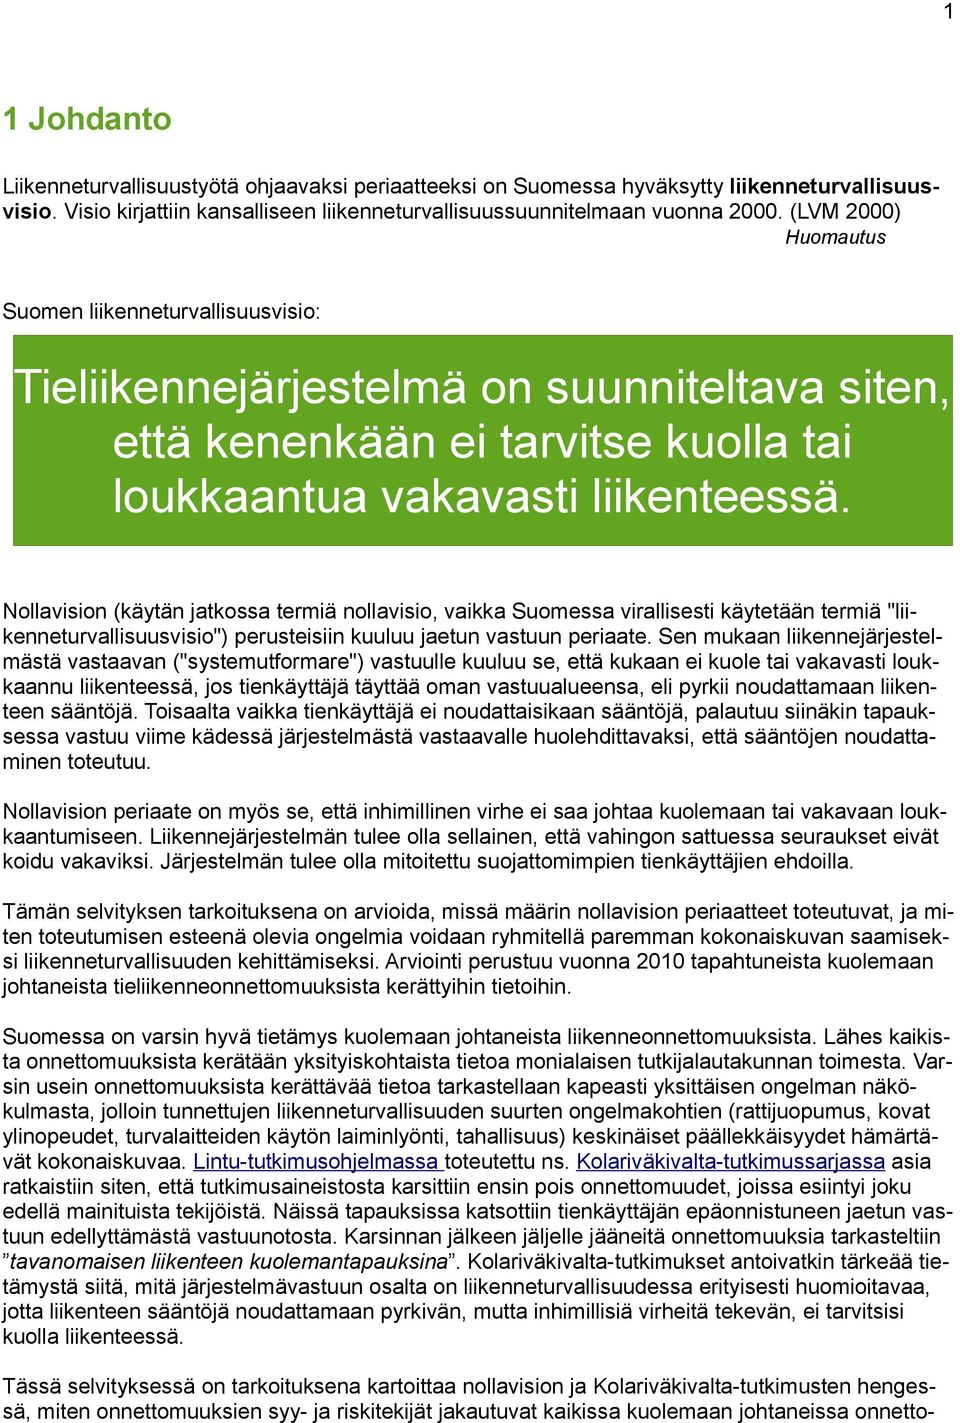 Nollavision (käytän jatkossa termiä nollavisio, vaikka Suomessa virallisesti käytetään termiä "liikenneturvallisuusvisio") perusteisiin kuuluu jaetun vastuun periaate.